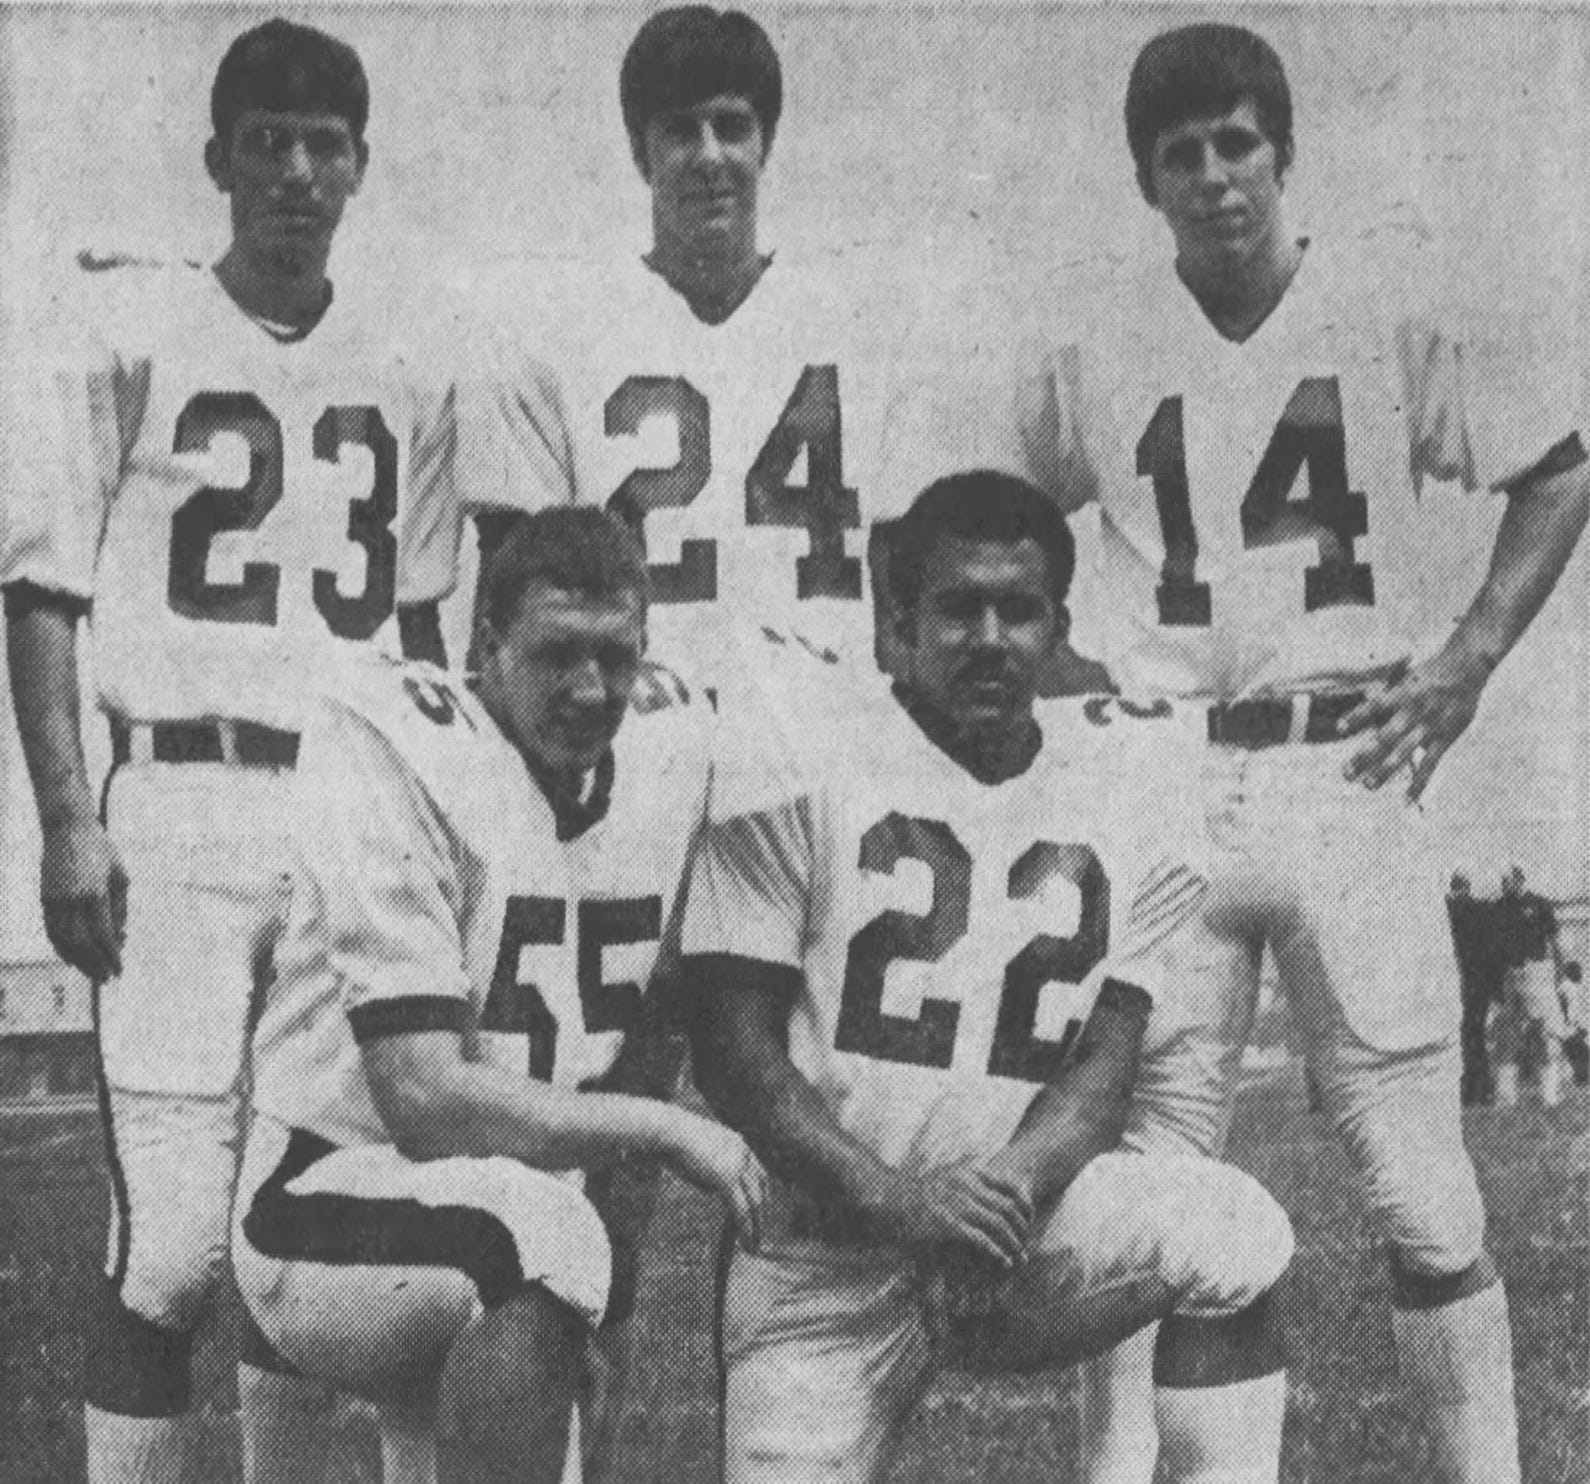 1970 marshall football team survivors